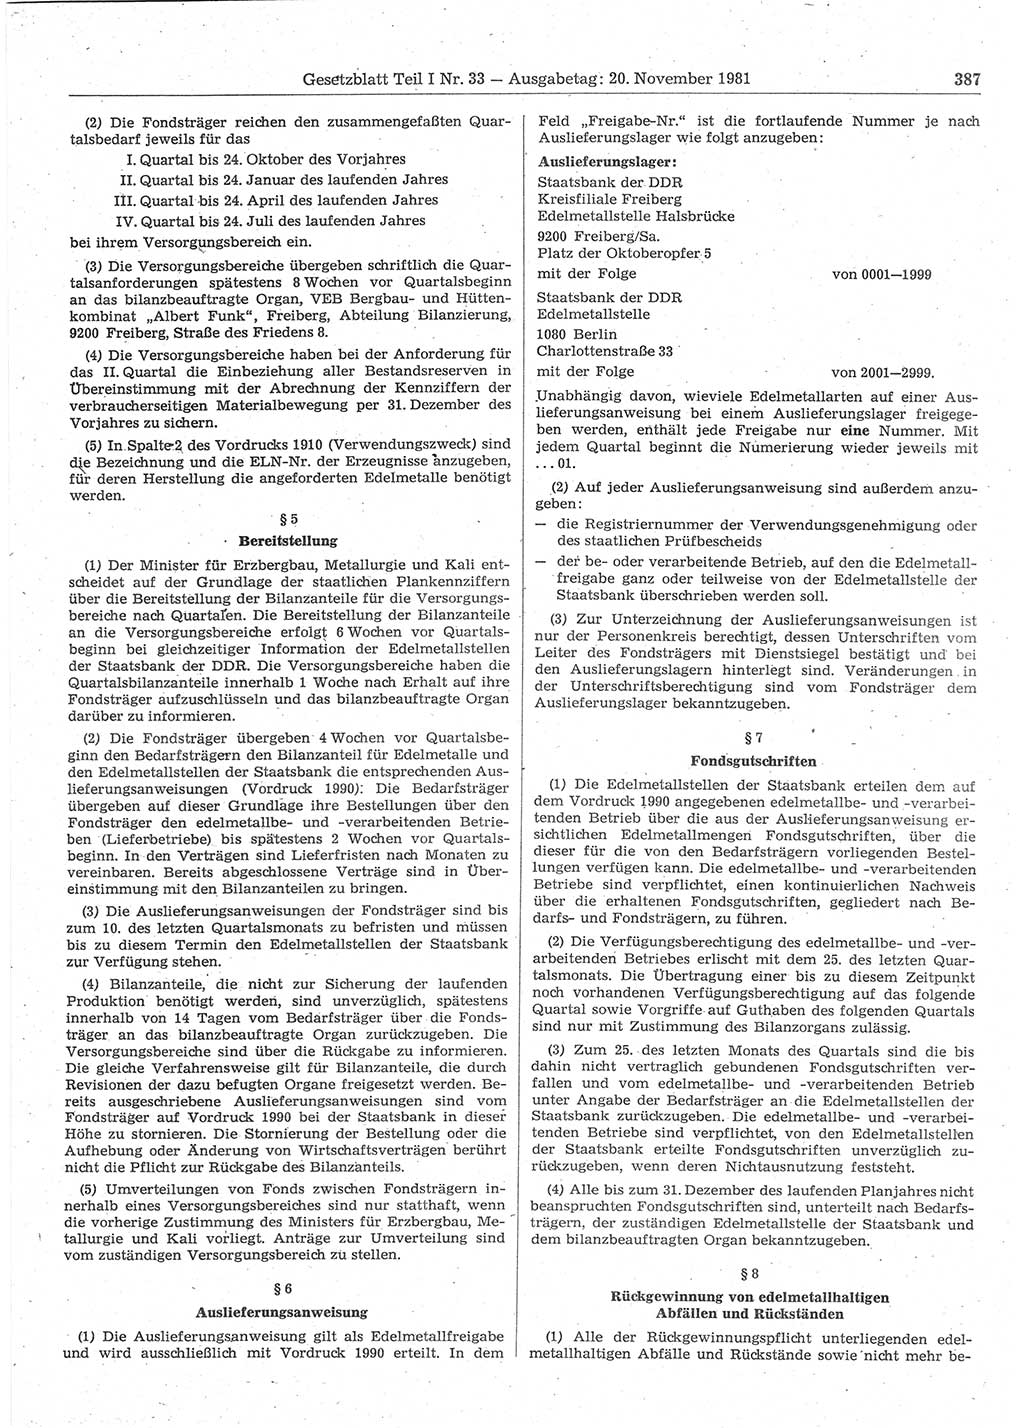 Gesetzblatt (GBl.) der Deutschen Demokratischen Republik (DDR) Teil Ⅰ 1981, Seite 387 (GBl. DDR Ⅰ 1981, S. 387)